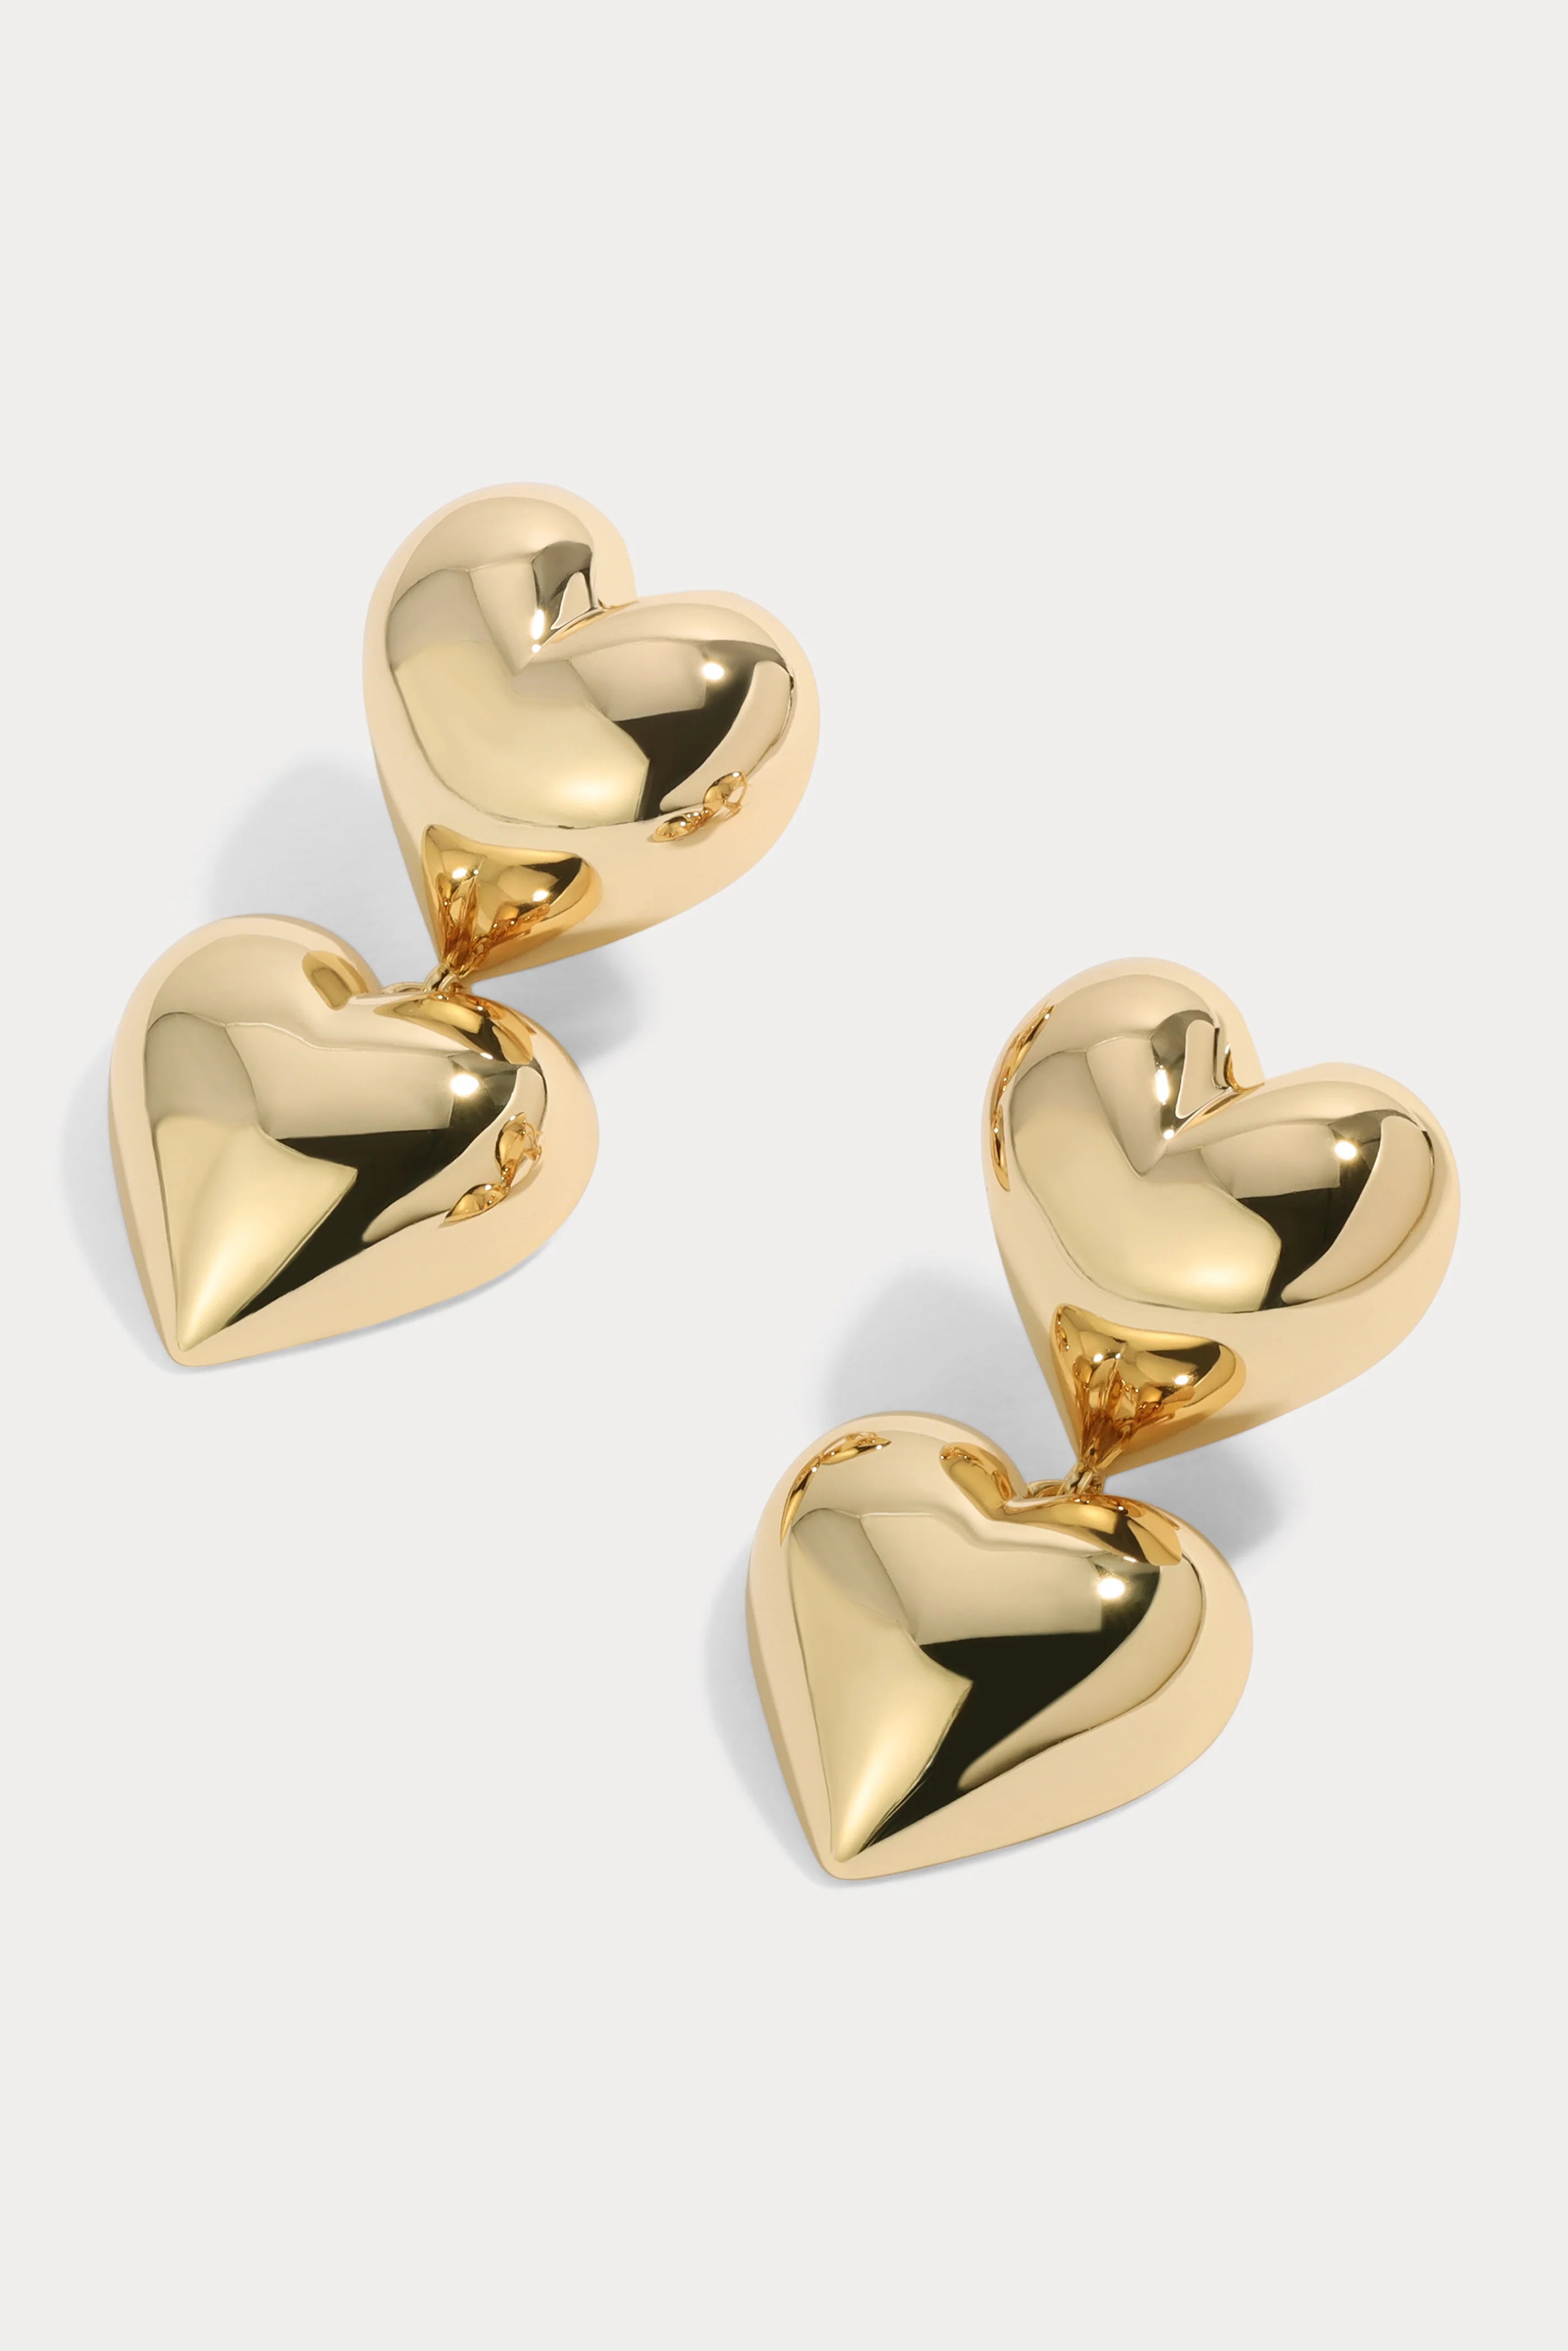 Lili Claspe Bubble Heart Earrings - Gold